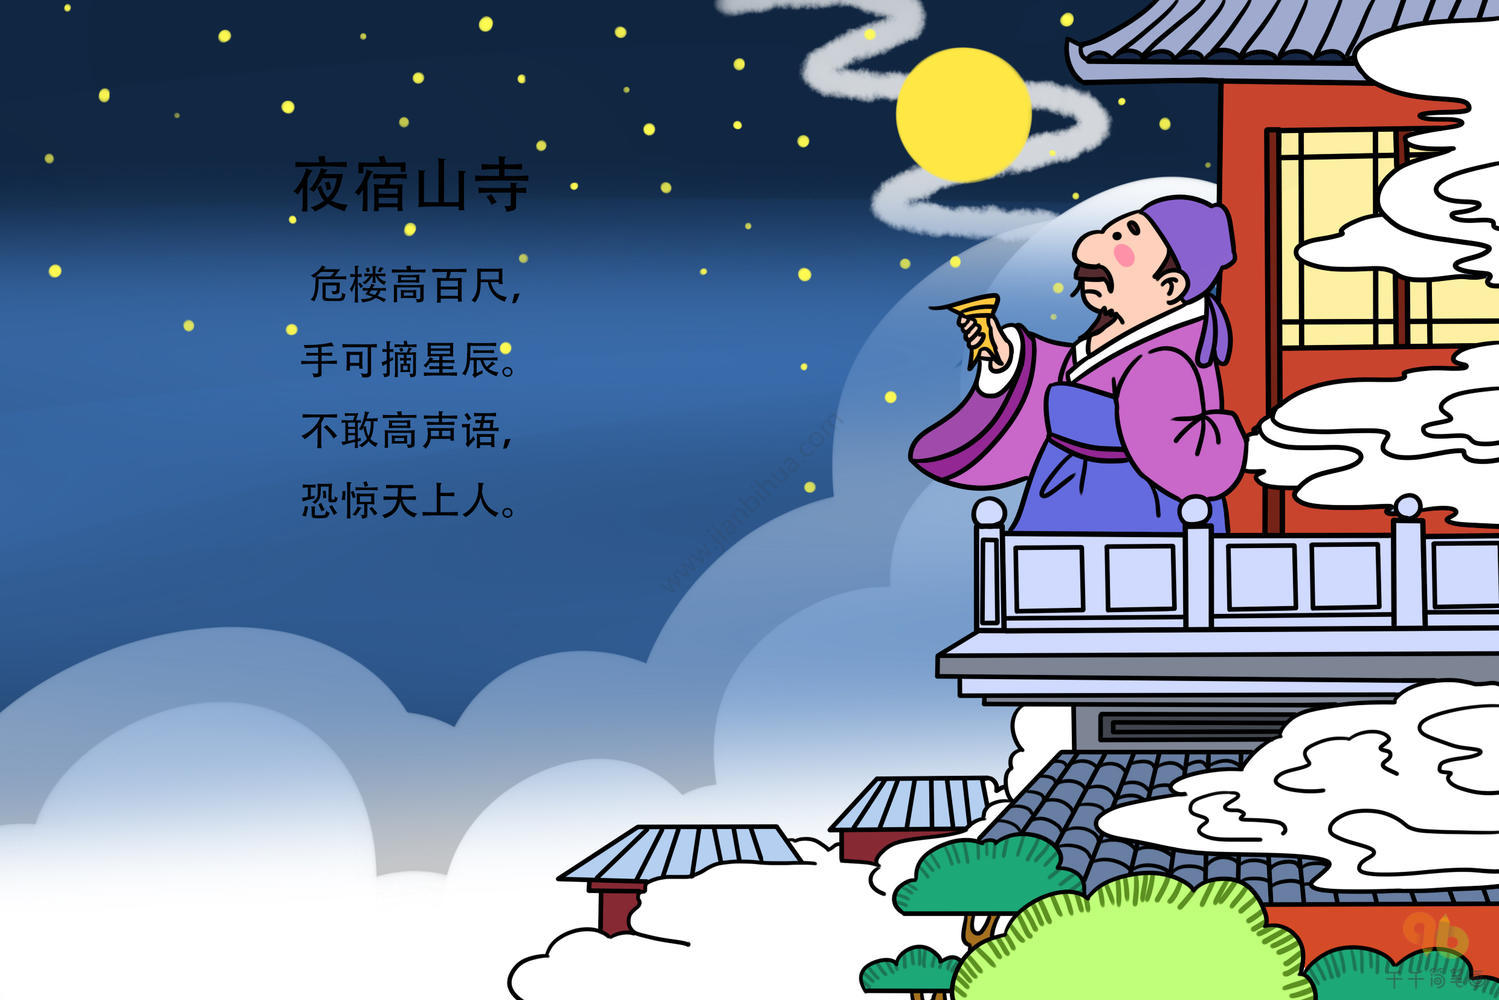 夜宿山寺图画作品图片